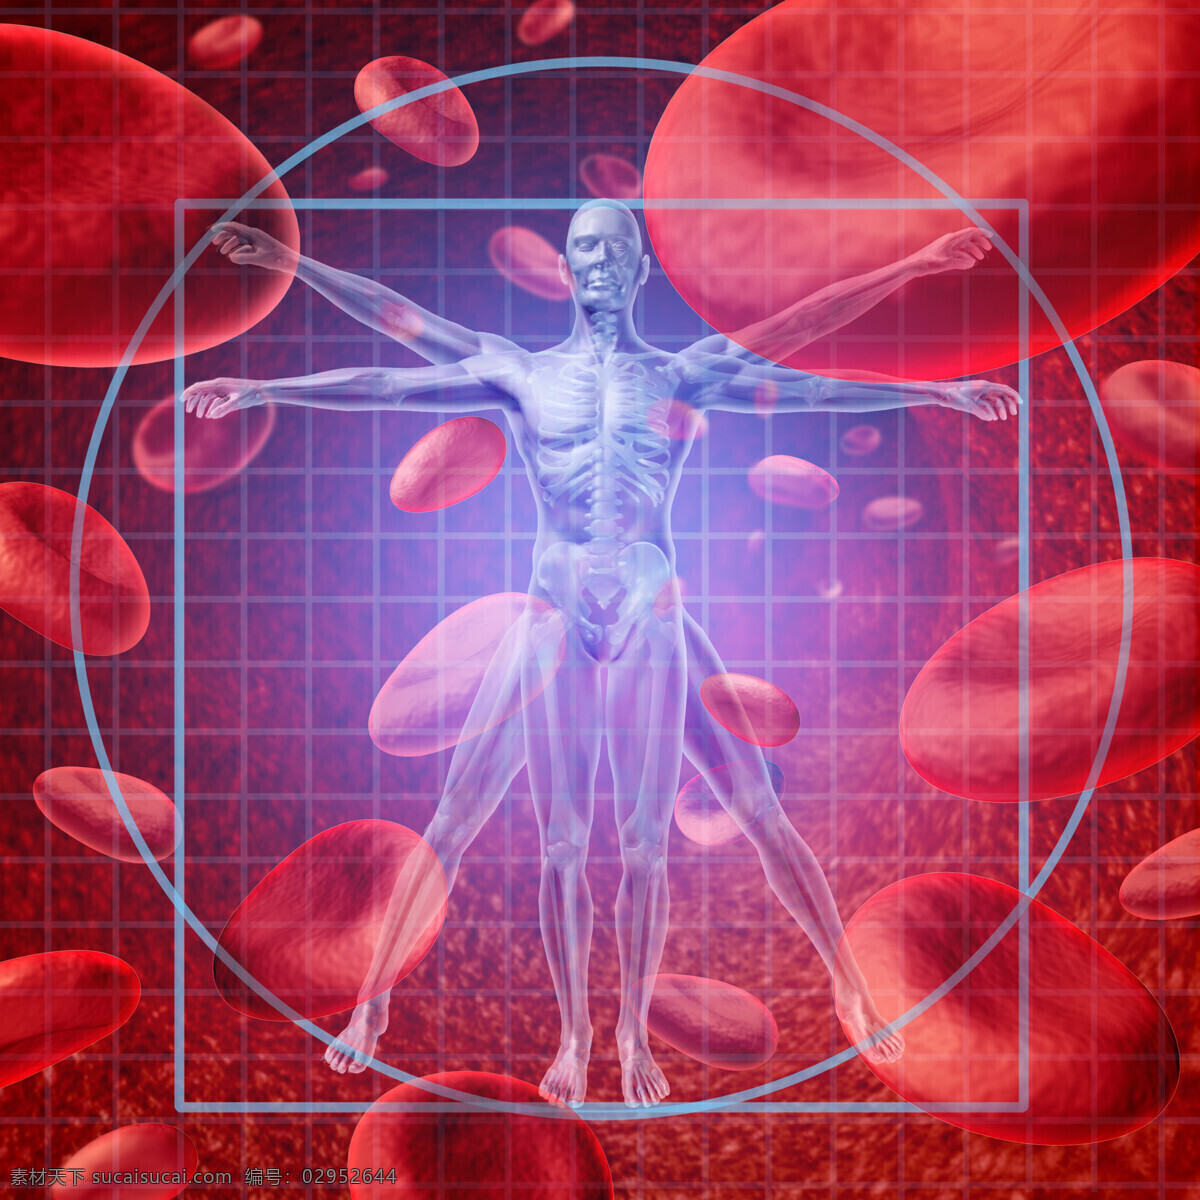 男性 人体 比例 骨骼器官 人体比例 男性人体器官 血液细胞 红色背景 医疗科学 医学 医疗护理 现代科技